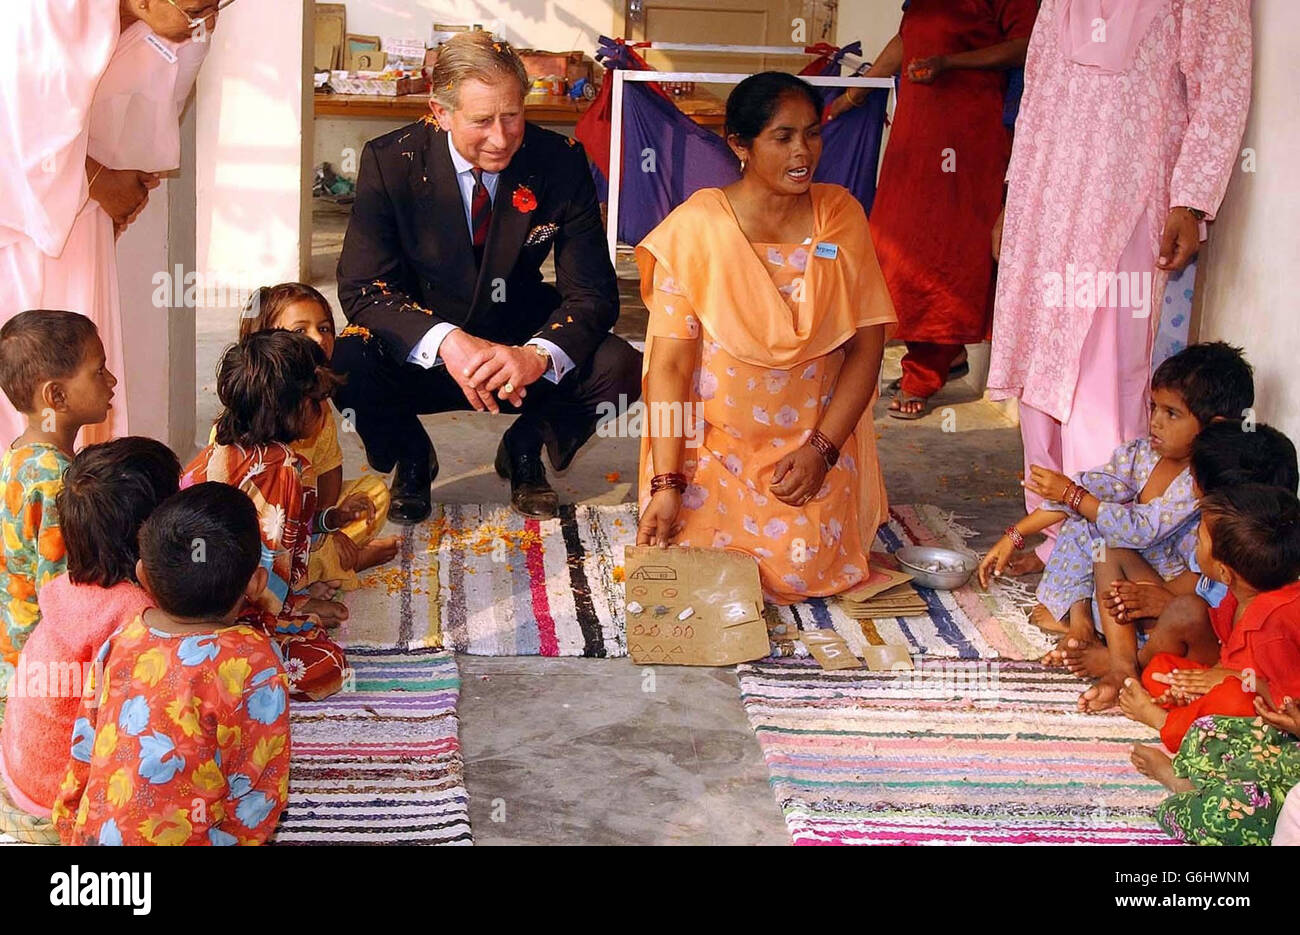 Il Principe del Galles si accoccolò per guardare i bambini giocare nella nursaria del villaggio di Kutail Gamri, alla periferia di Delhi, India, come parte della sua visita nella zona. Foto Stock